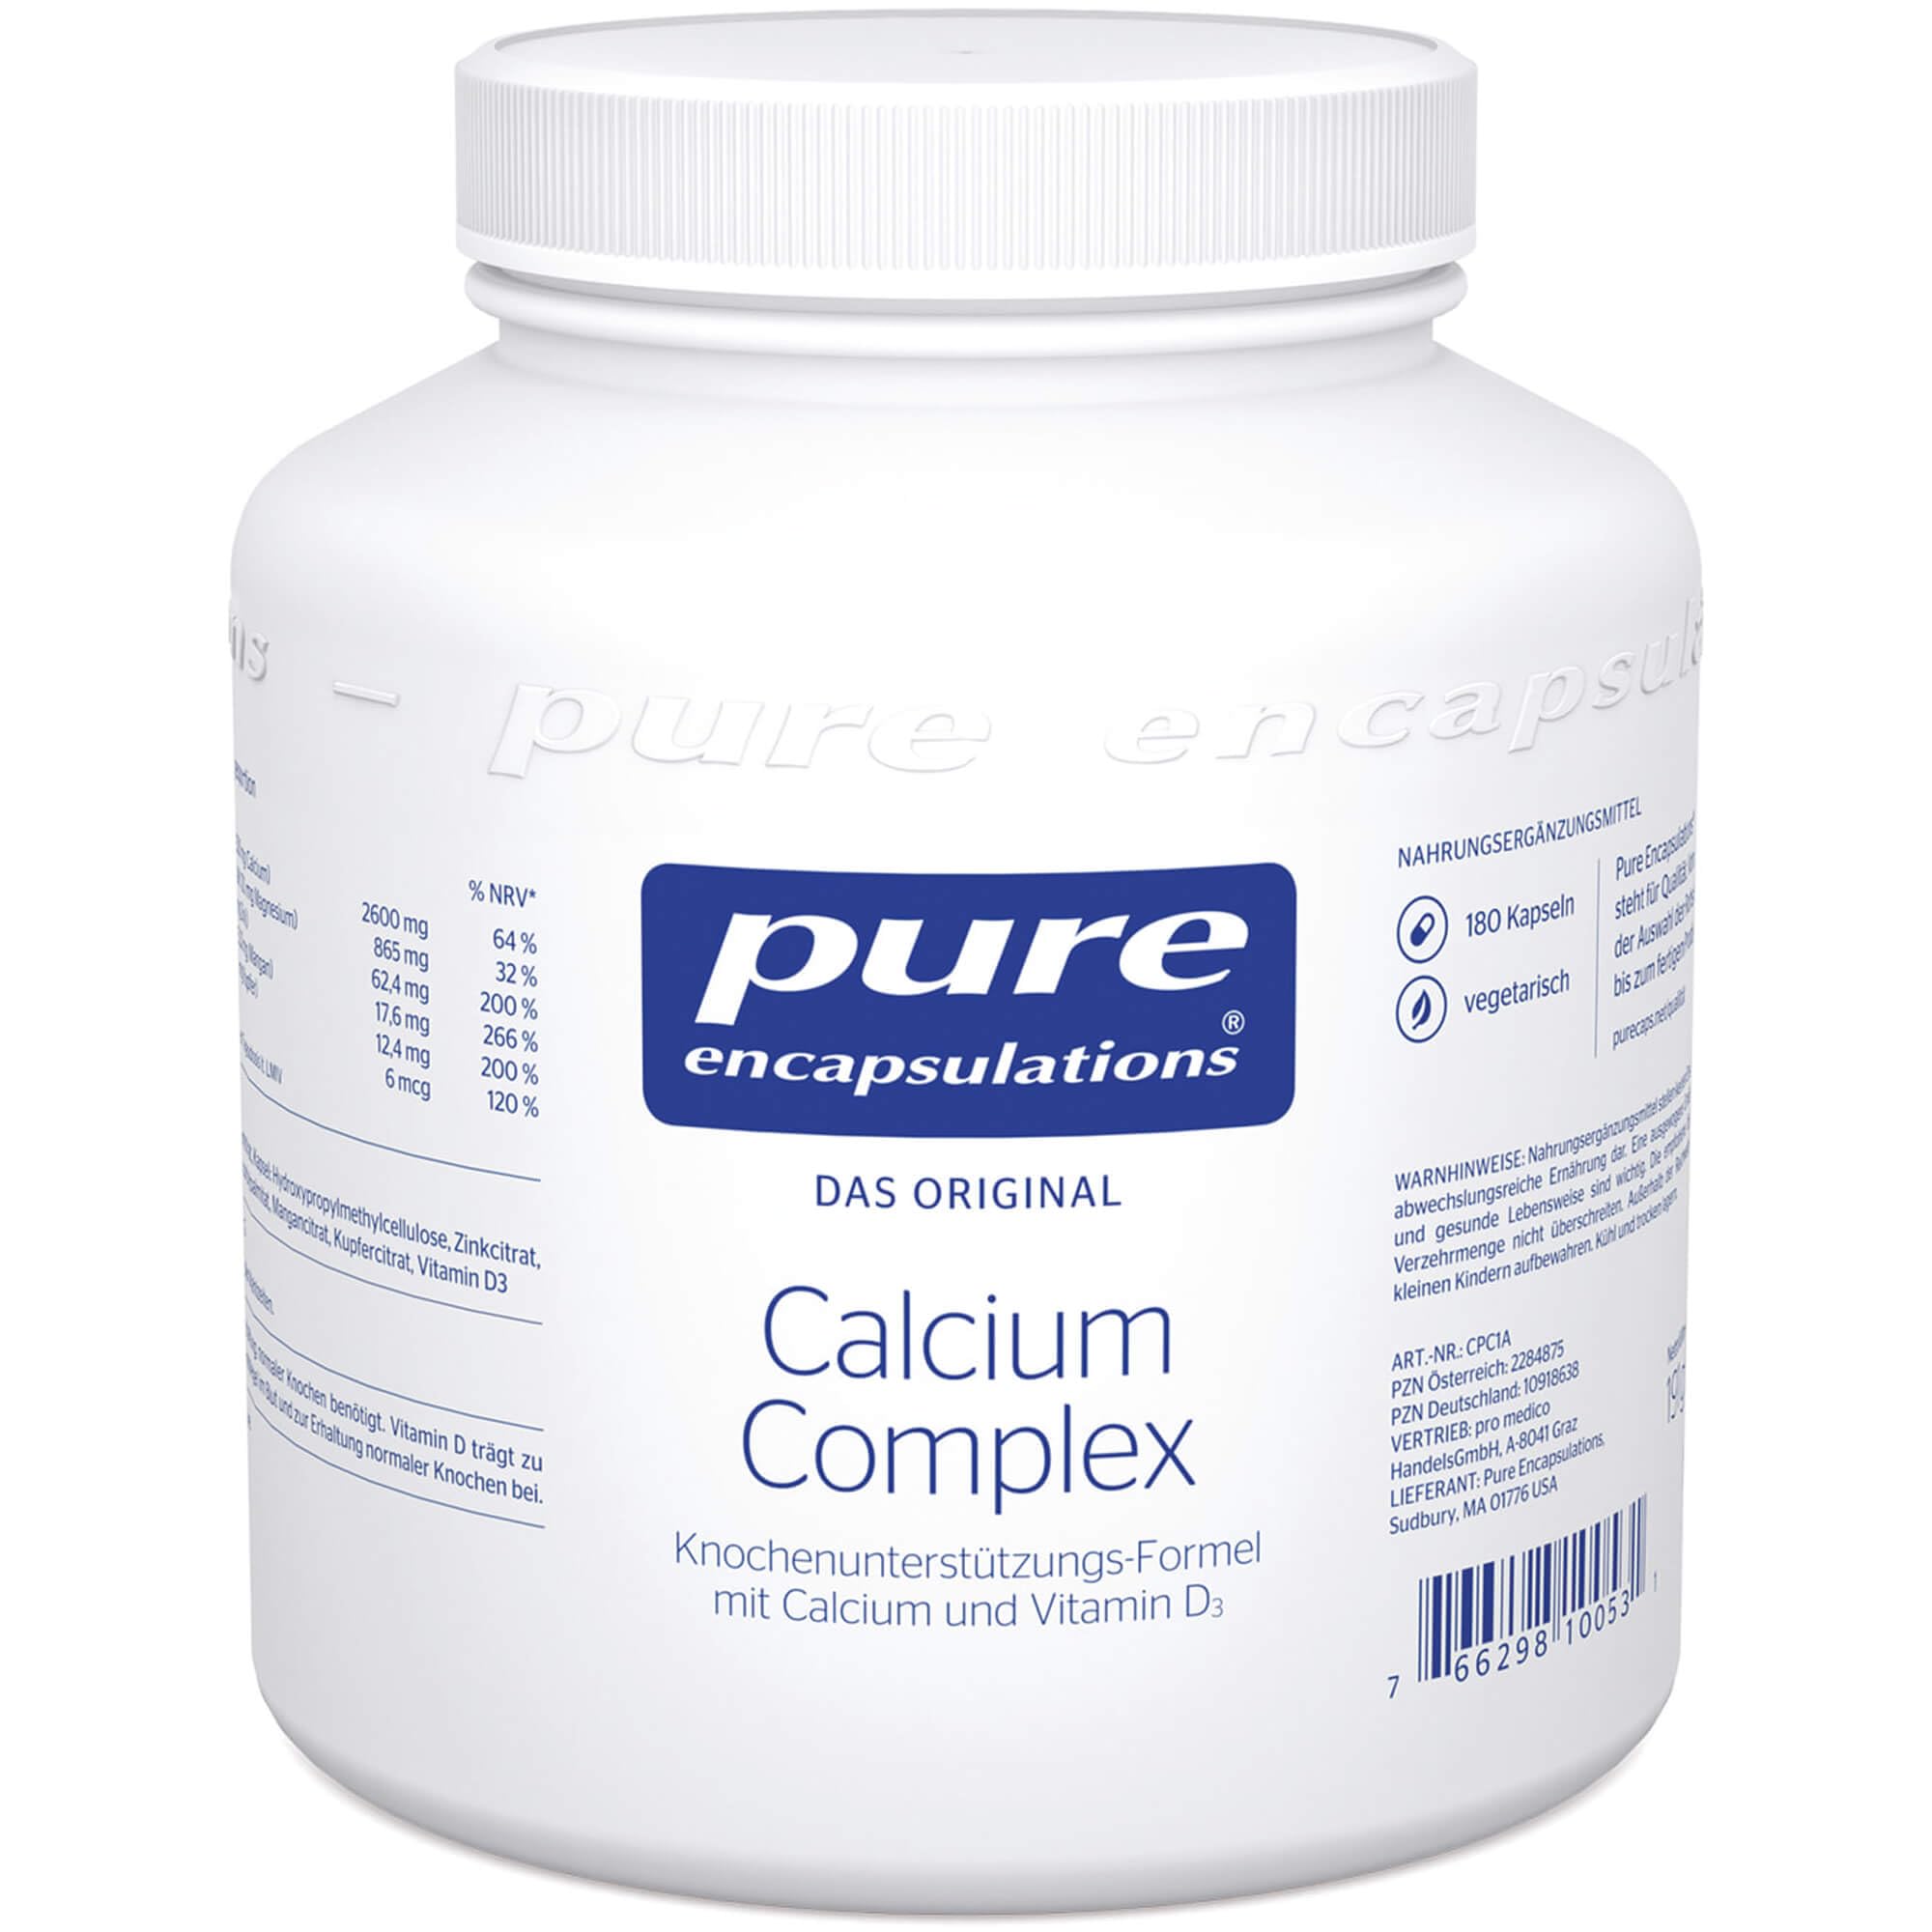 Pure Encapsulations Calcium Complex 180 Kapseln